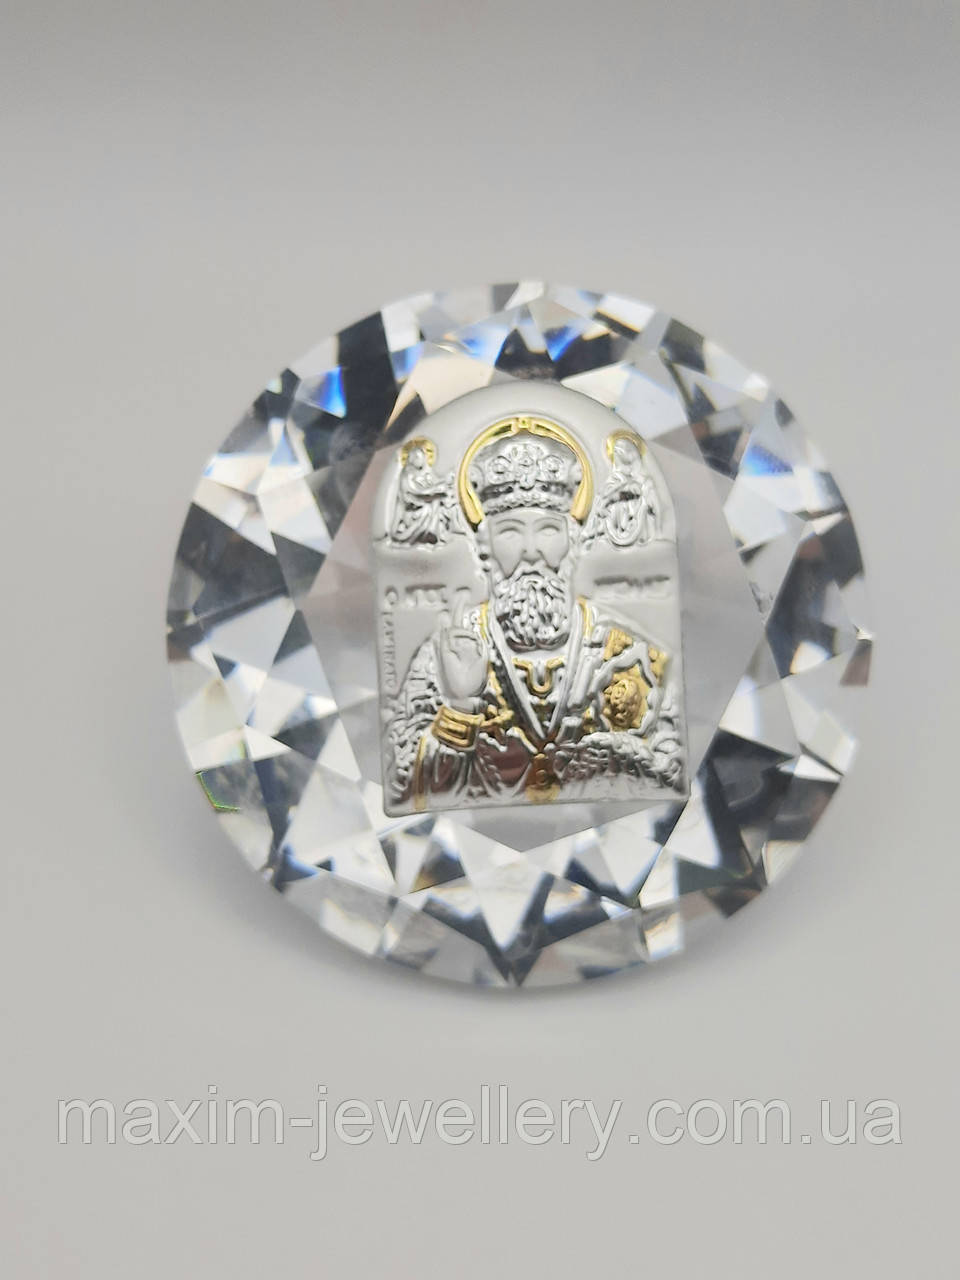 Сувенір із срібною іконкою "Миколай Чудотворець" у формі кристала